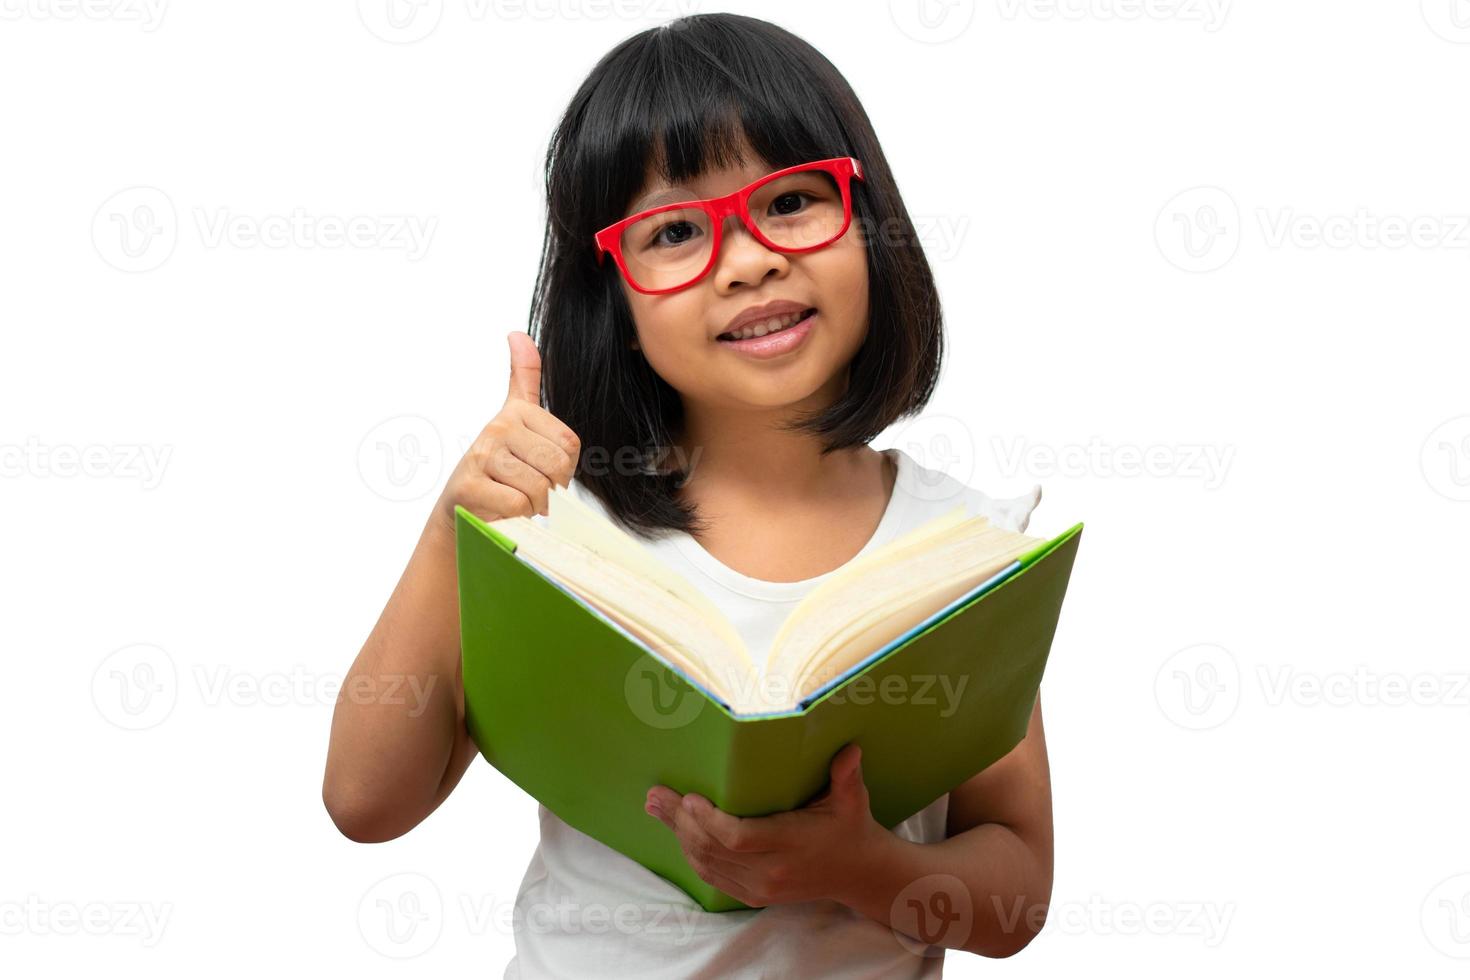 felice ragazza asiatica in età prescolare che indossa occhiali rossi in possesso di un libro verde e pollice in alto su sfondo bianco isolato. concetto di bambino in età scolare e istruzione nelle elementari e in età prescolare, scuola a casa foto